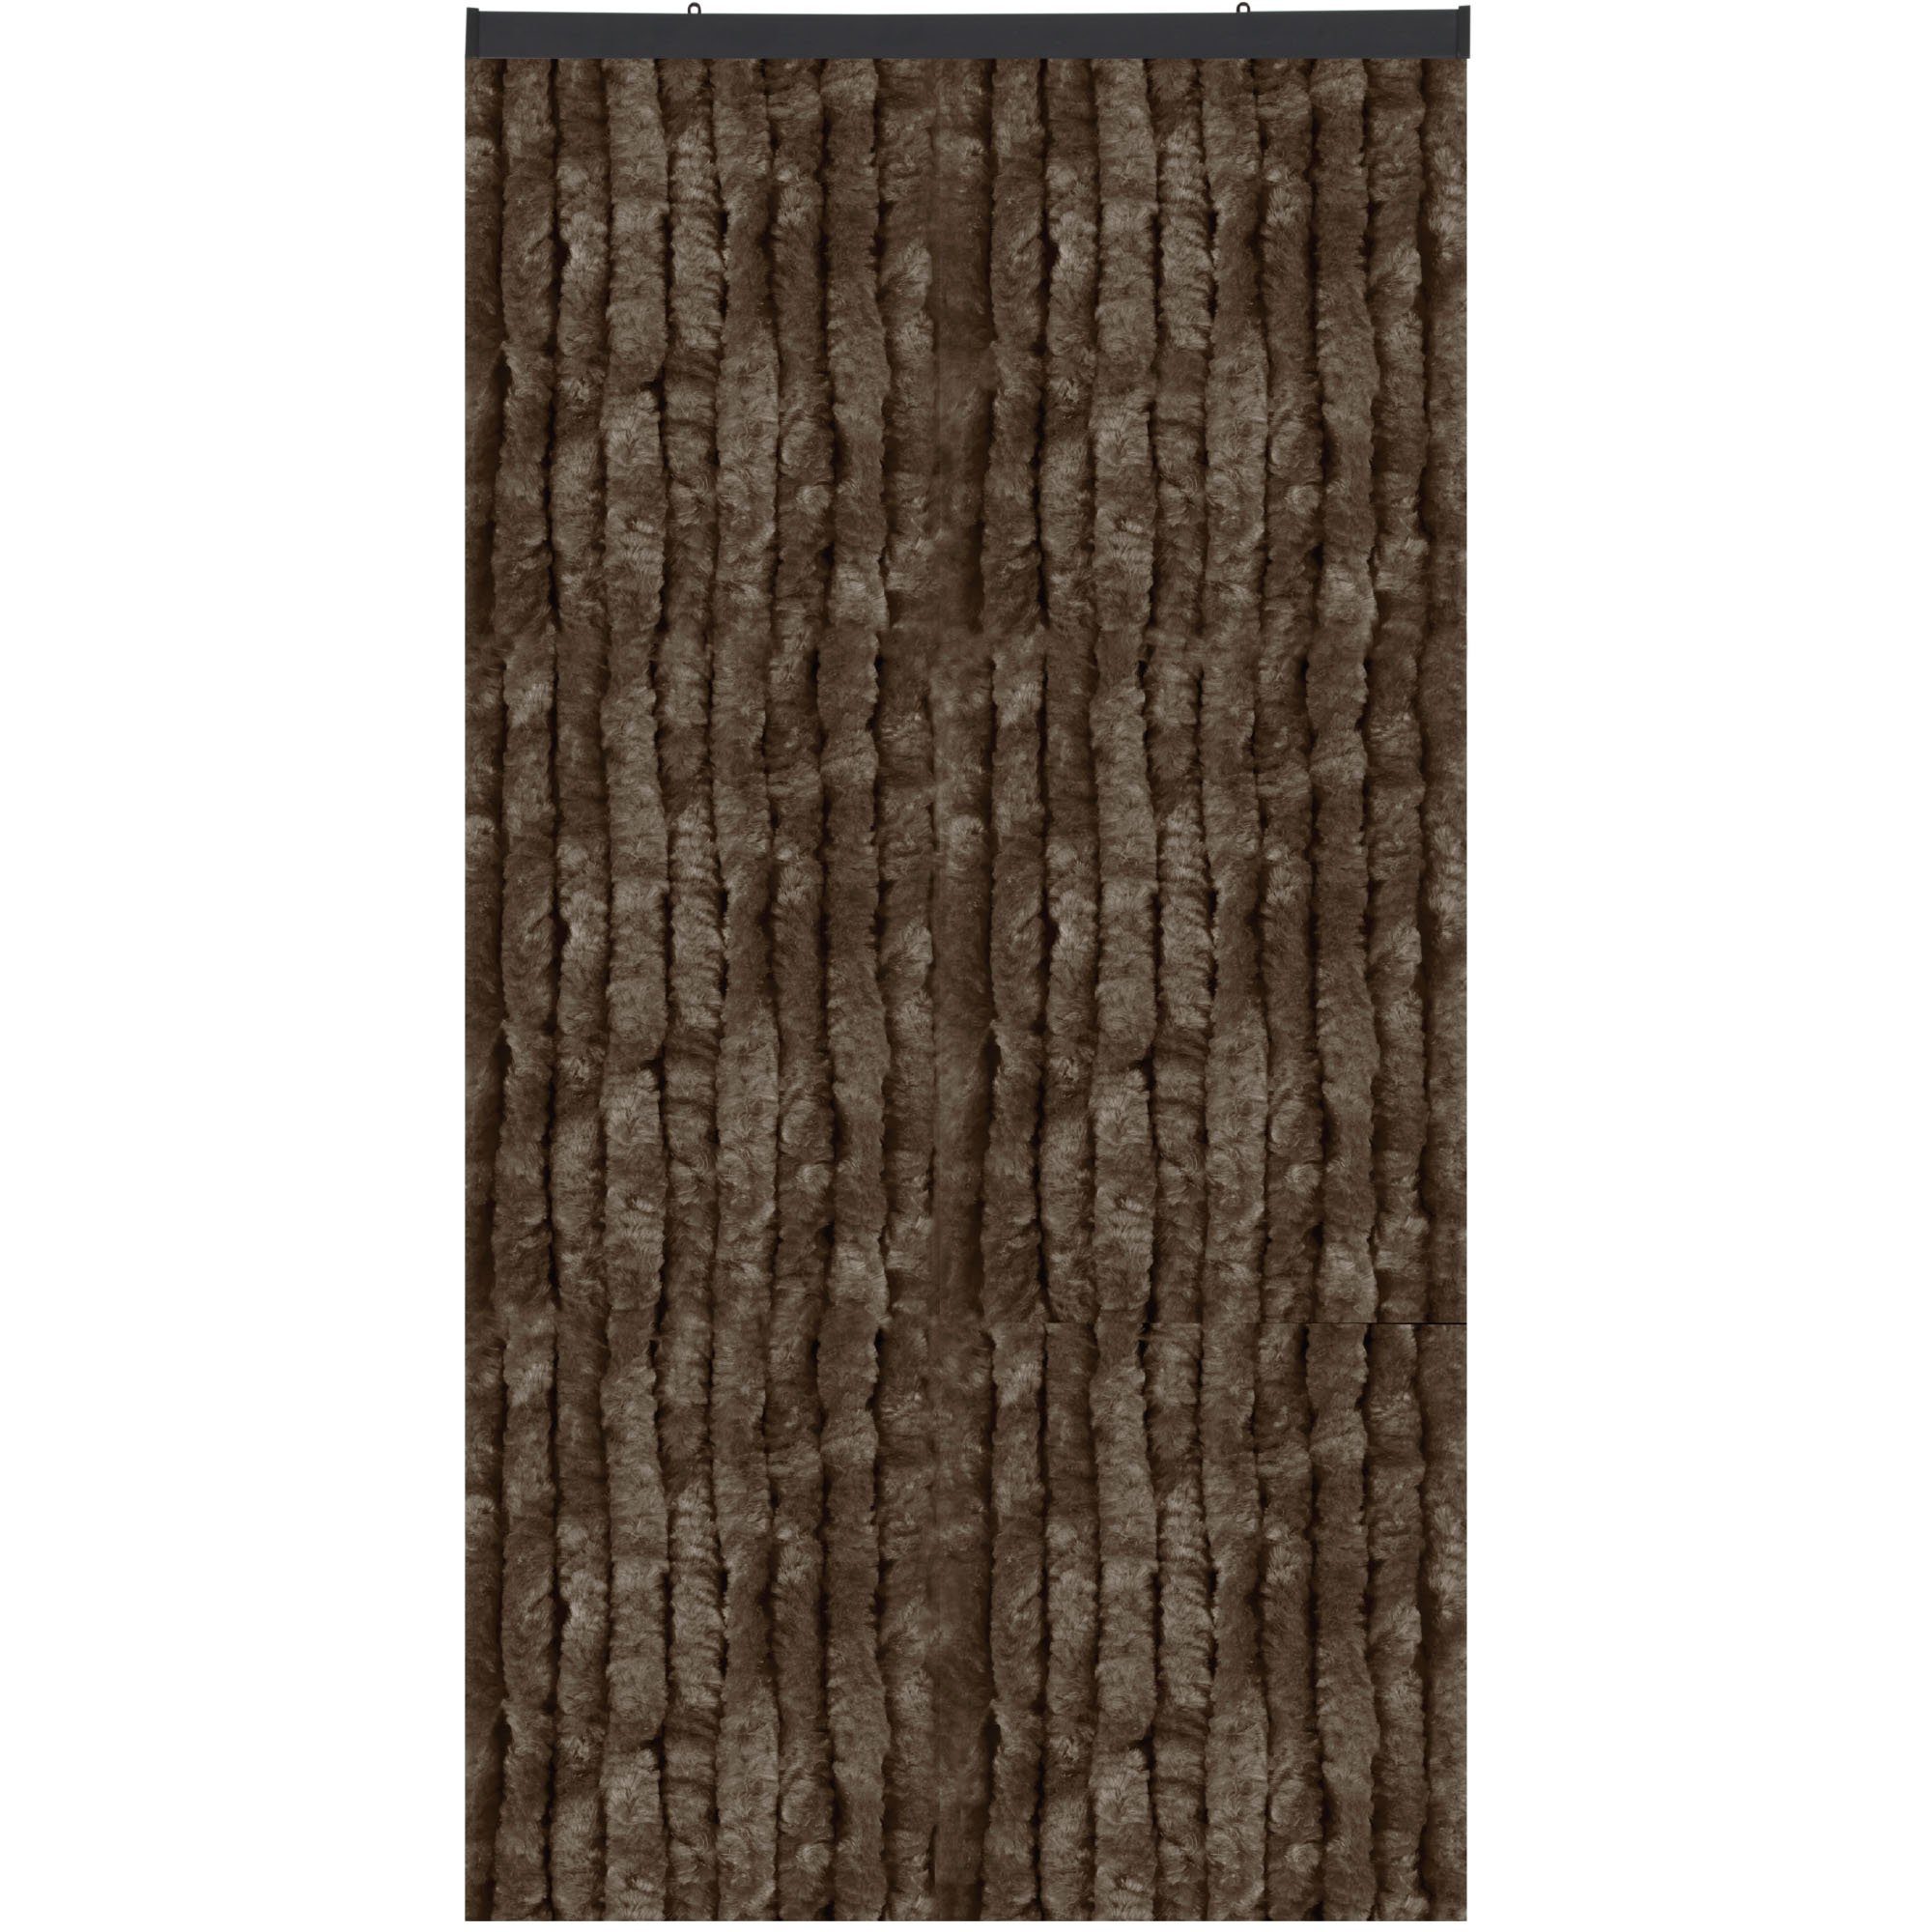 Türvorhang Flauschi, Arsvita, Ösen (1 St), Flauschvorhang 160x185 cm in Unistreifen braun, viele Farben